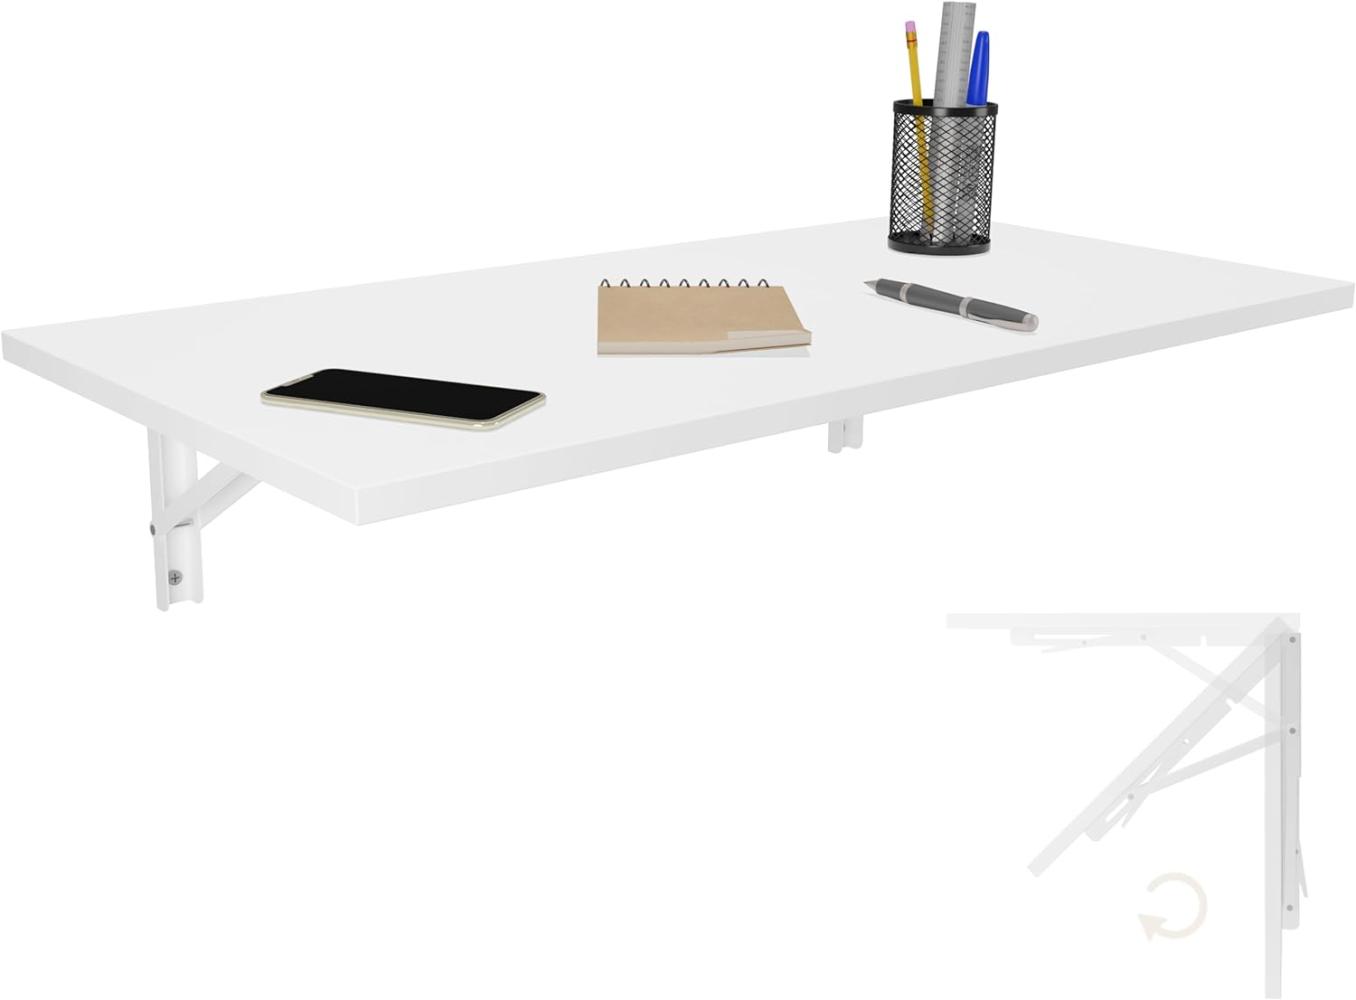 Wandklapptisch Schreibtisch Tischplatte 80x40 cm in Weiß Klapptisch Esstisch Küchentisch für die Wand Bartisch Stehtisch Wandtisch Tisch klappbar zur Wandmontage im Büro Küche Bild 1